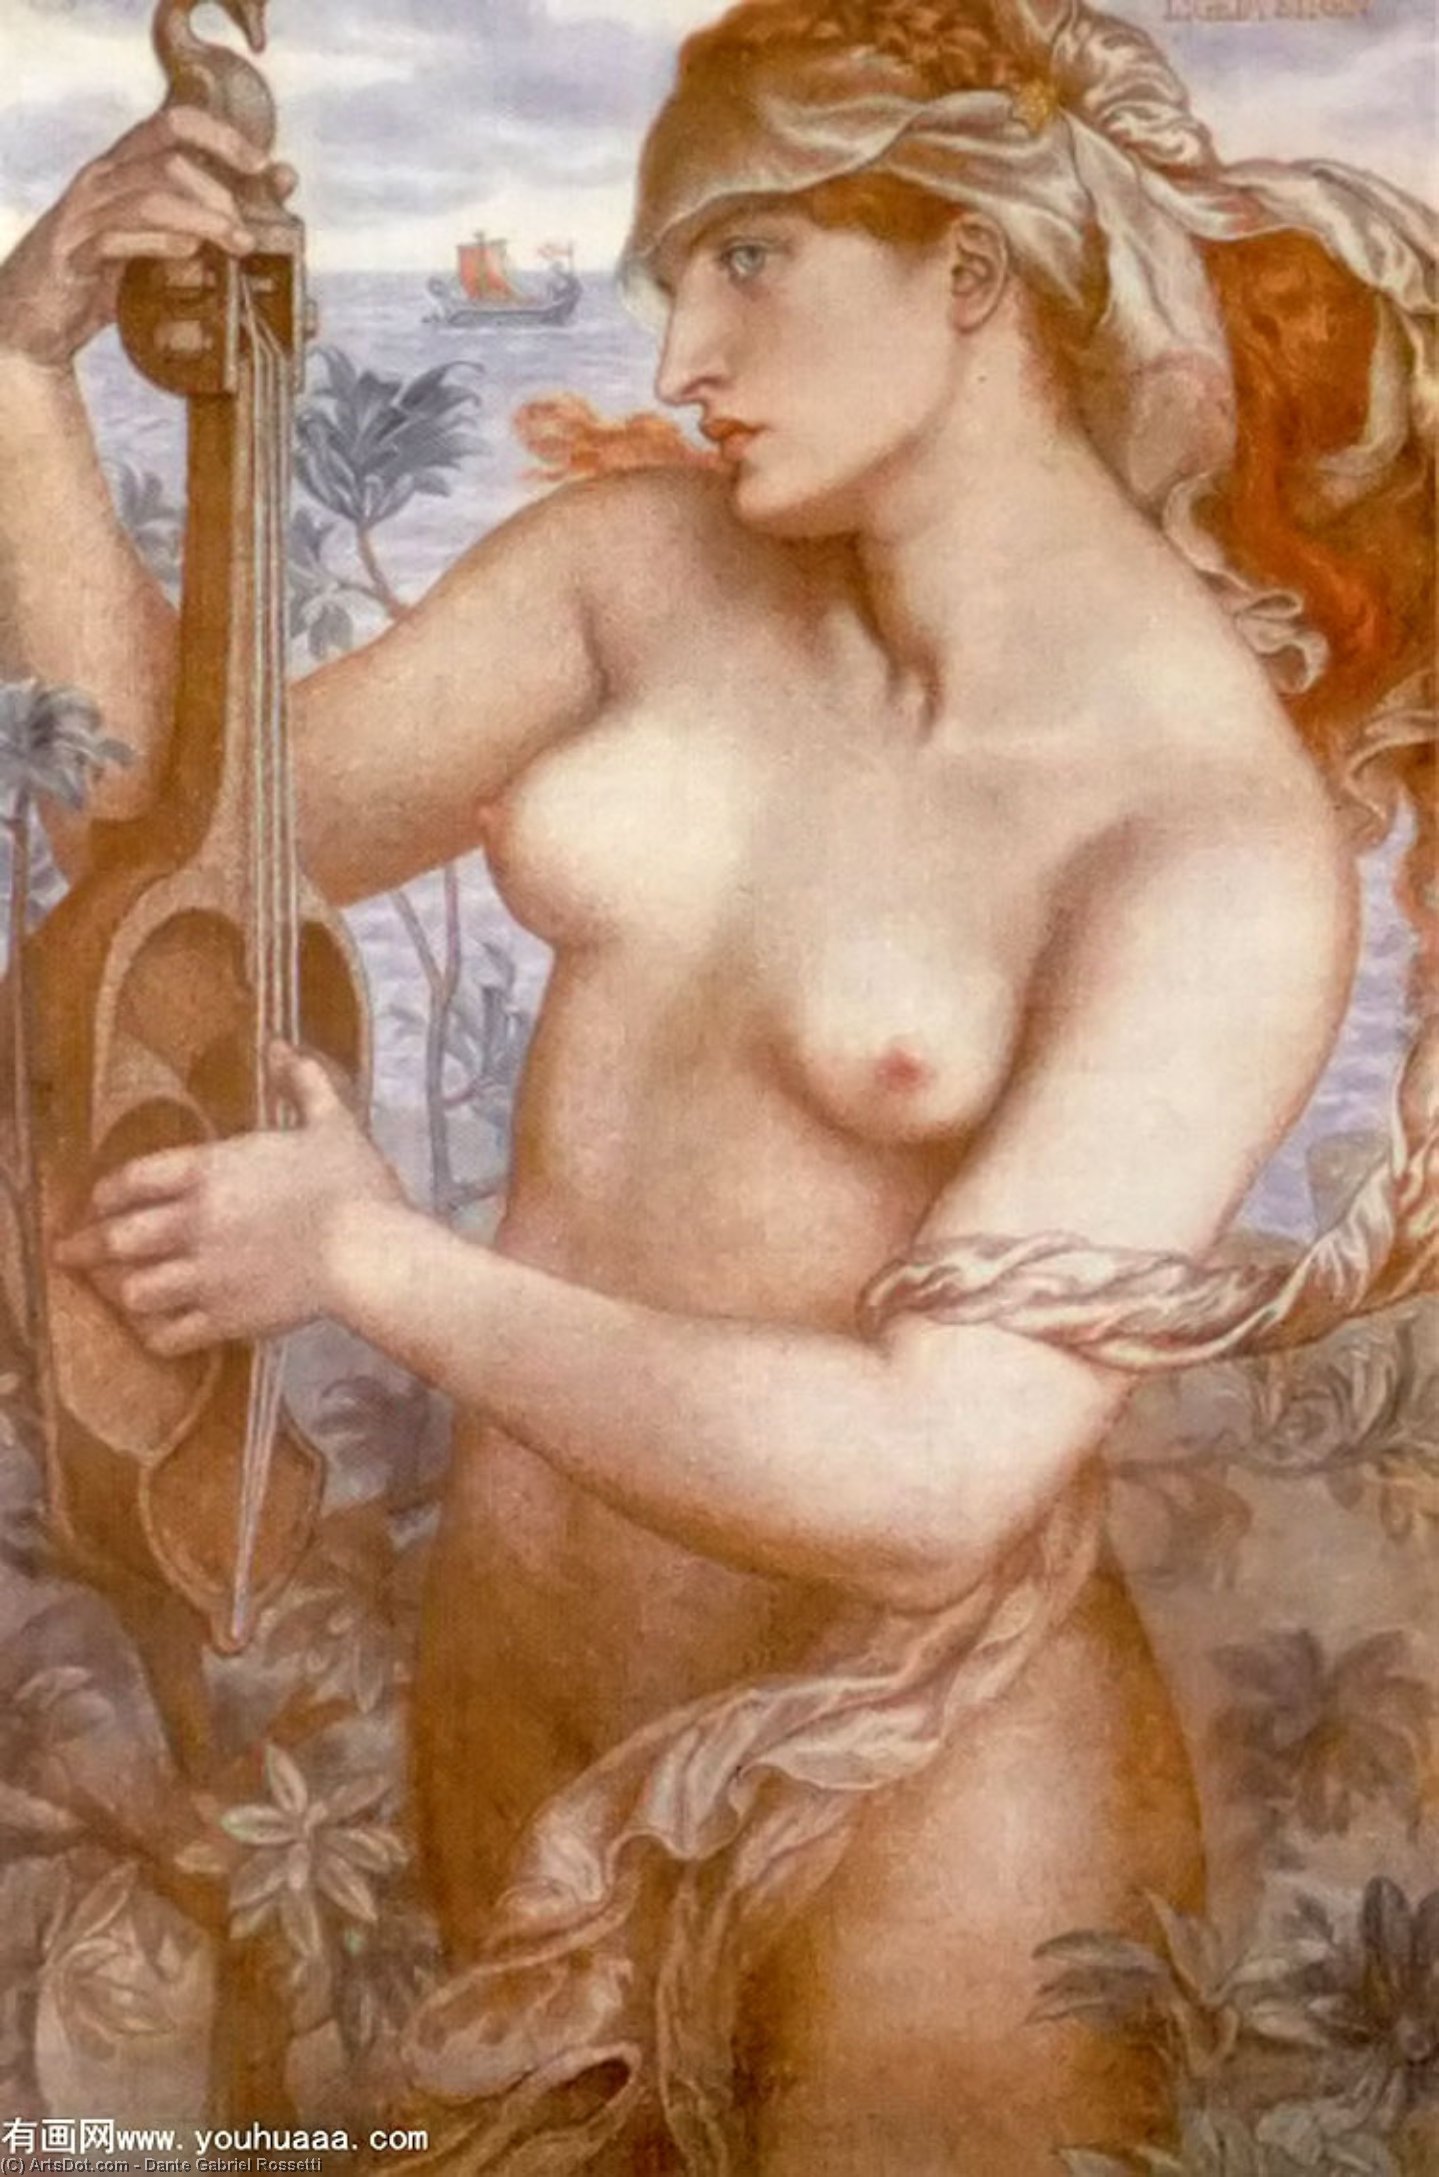 WikiOO.org - Encyclopedia of Fine Arts - Lukisan, Artwork Dante Gabriel Rossetti - Ligeia Siren